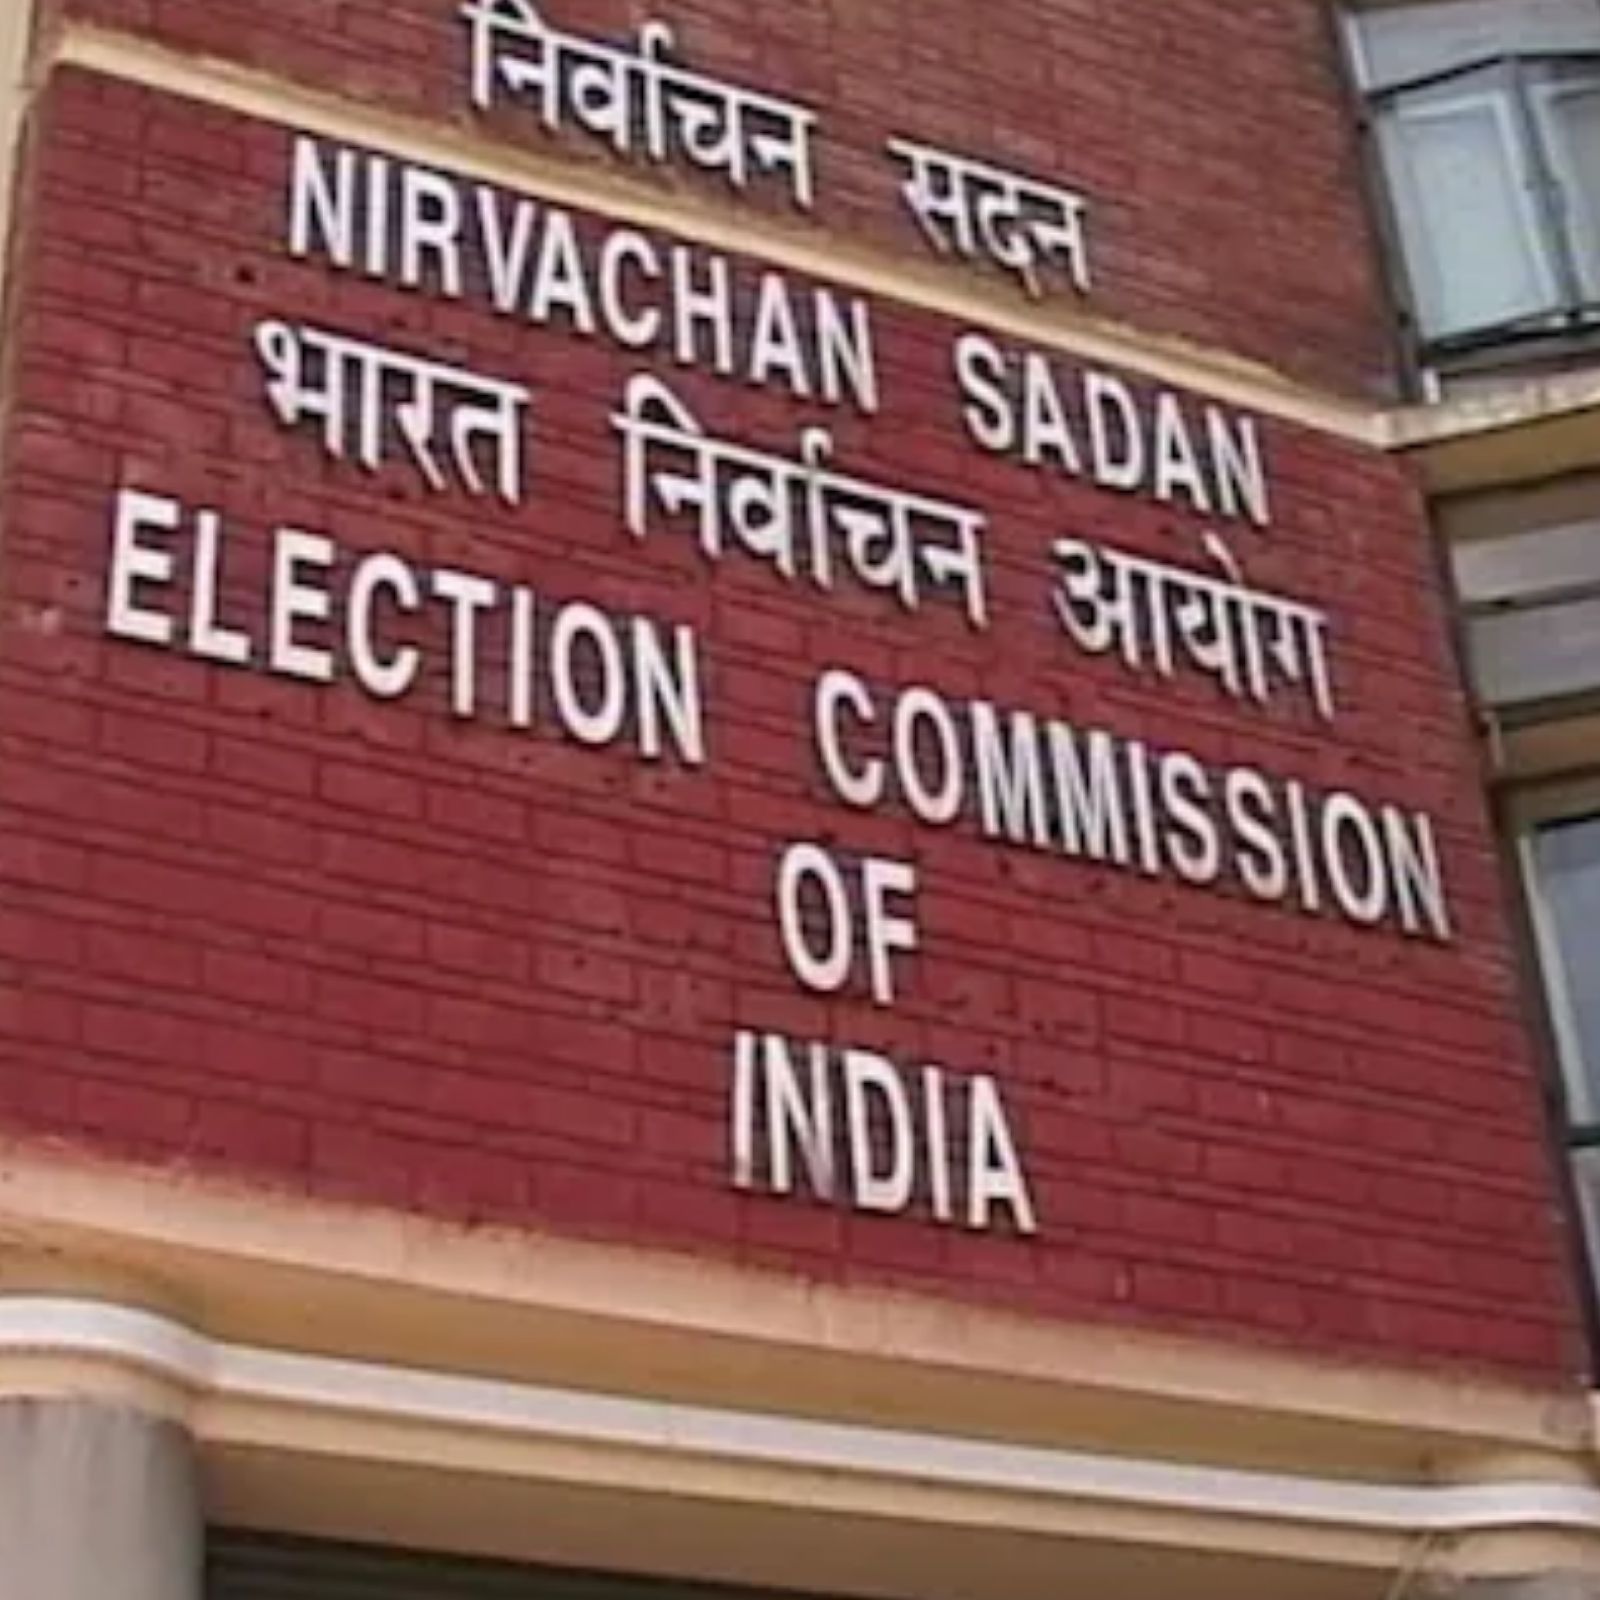 3 राज्यों में चुनाव की तारीखों का ऐलान:त्रिपुरा में 16 फरवरी, मेघालय-नगालैंड में 27 फरवरी को वोटिंग; 2 मार्च को काउंटिंग